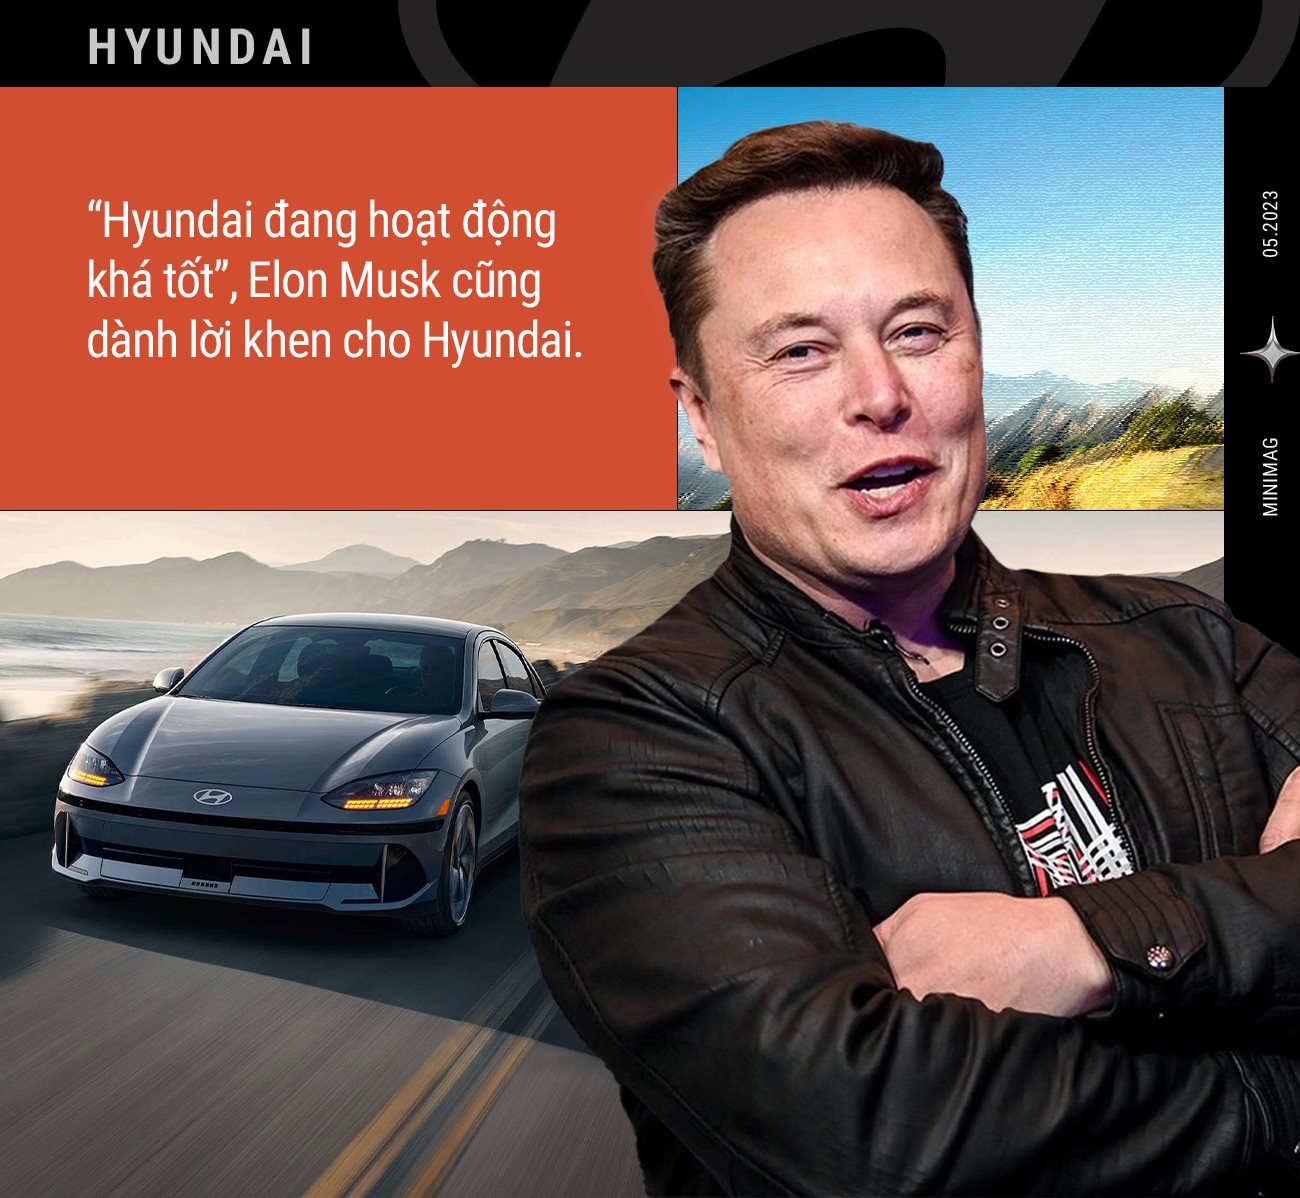 Sự trỗi dậy của Hyundai: Từ hãng xe bảo thủ, chuyên đi theo sau người khác giờ vươn lên thành thế lực đáng gờm, đến Elon Musk cũng phải kiêng nể - Ảnh 4.